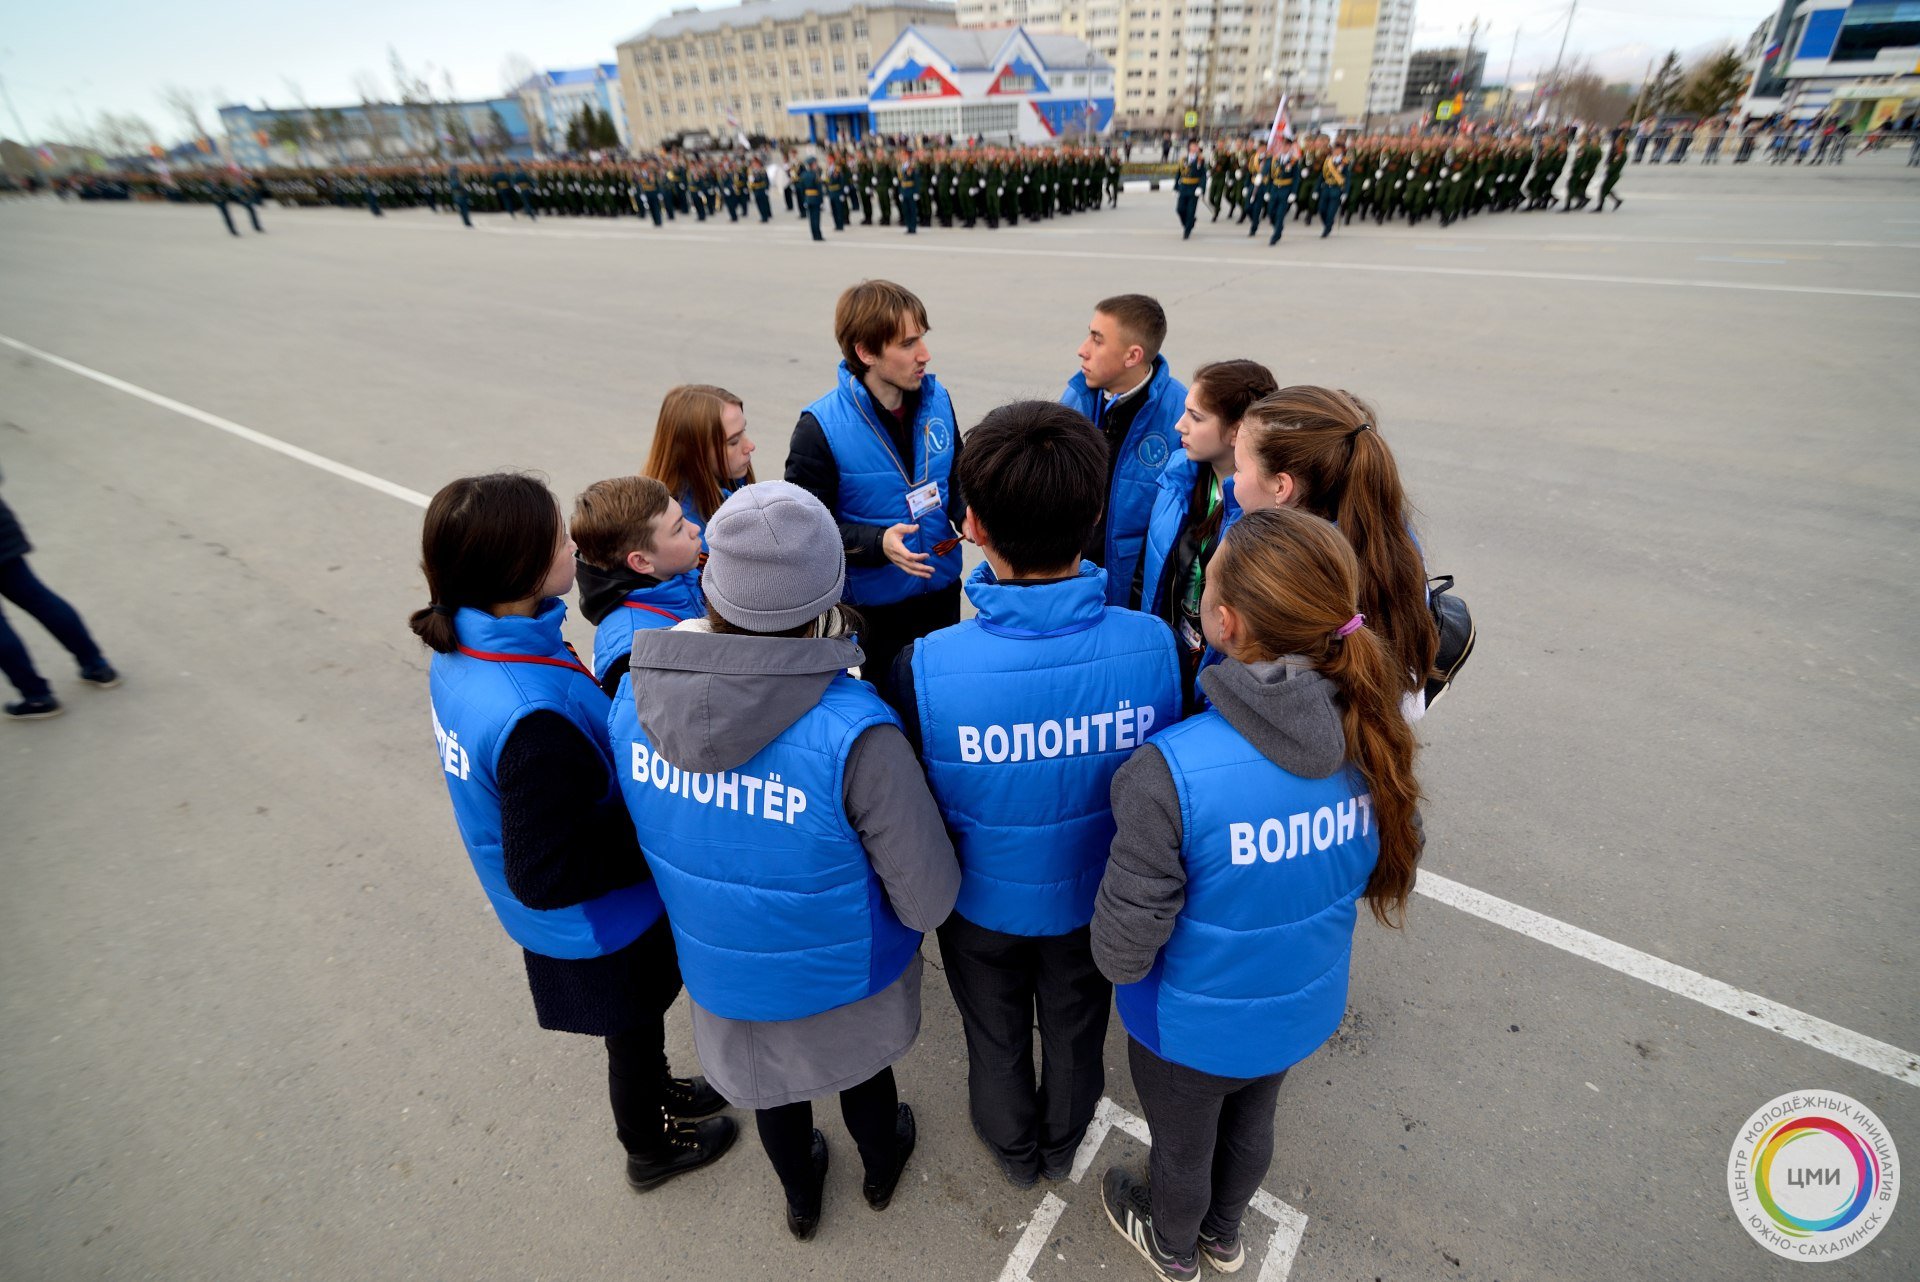 Первая волонтерская организация. Современные волонтеры. Волонтерские организации. Современное волонтерство в РФ. Фотосессия волонтеров.